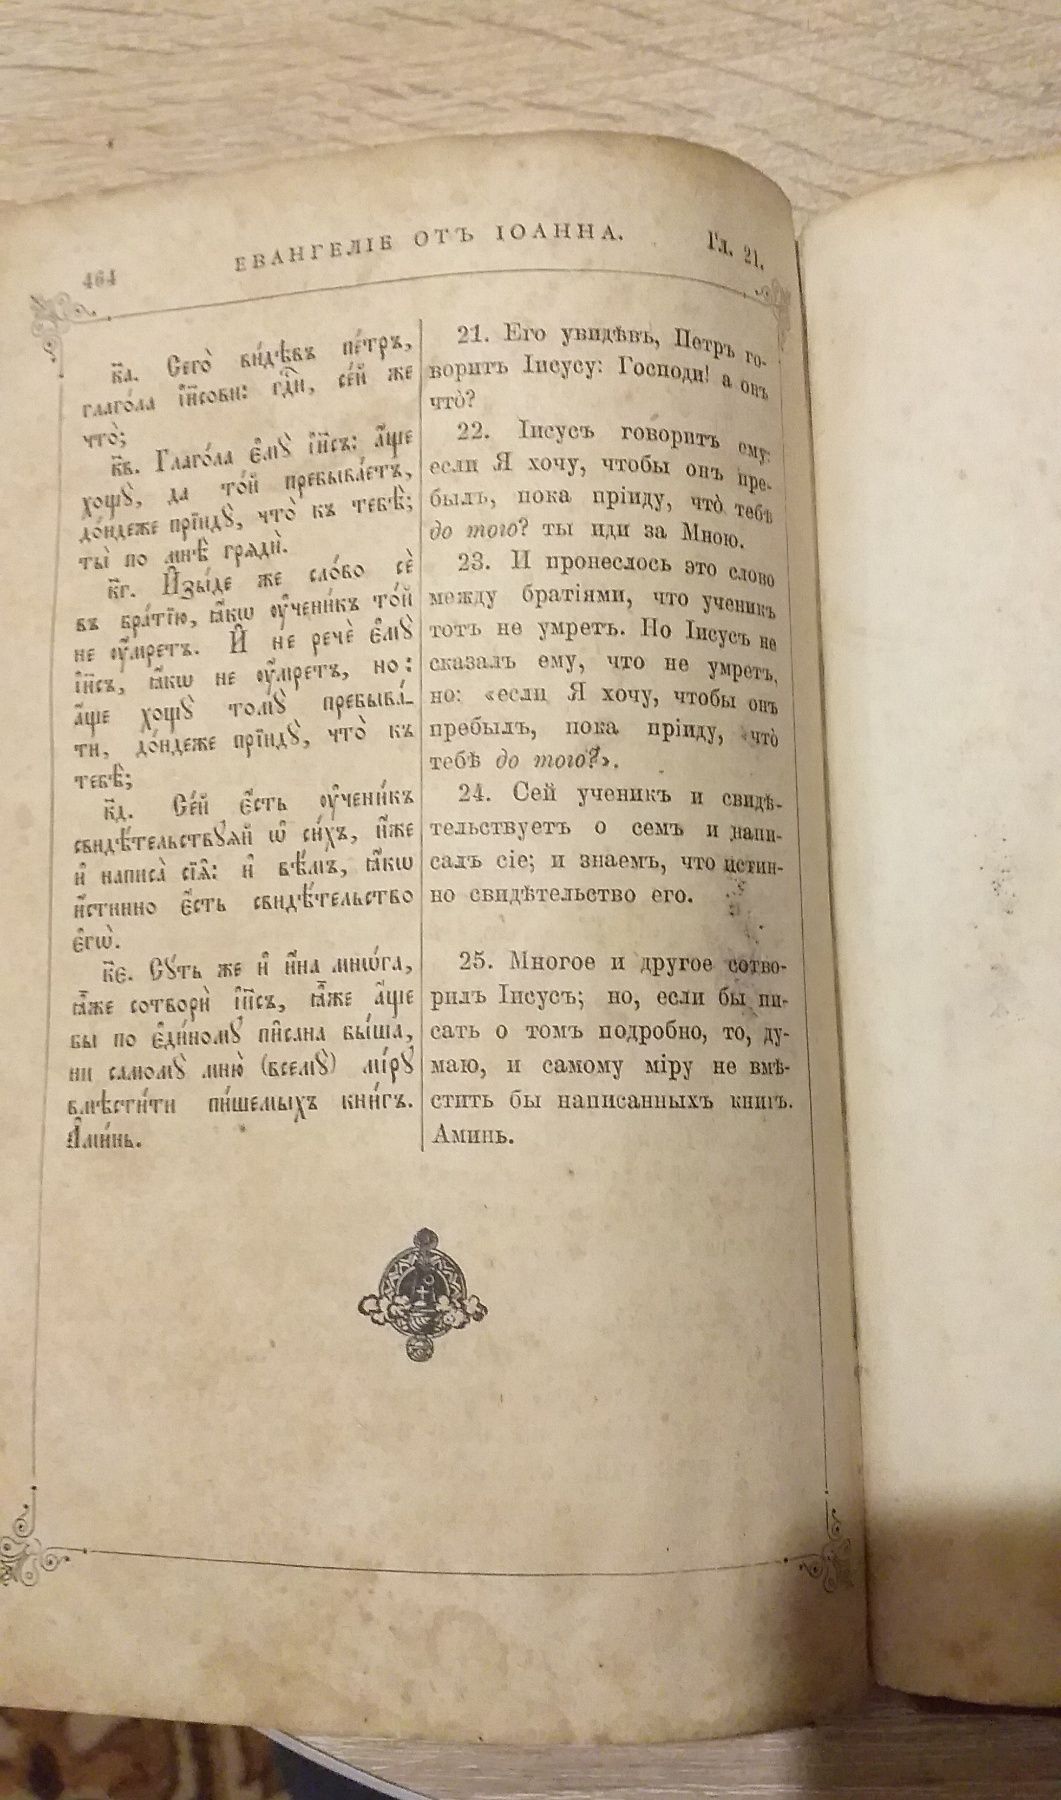 1907г Святое Евангелие Религиозная старая книга